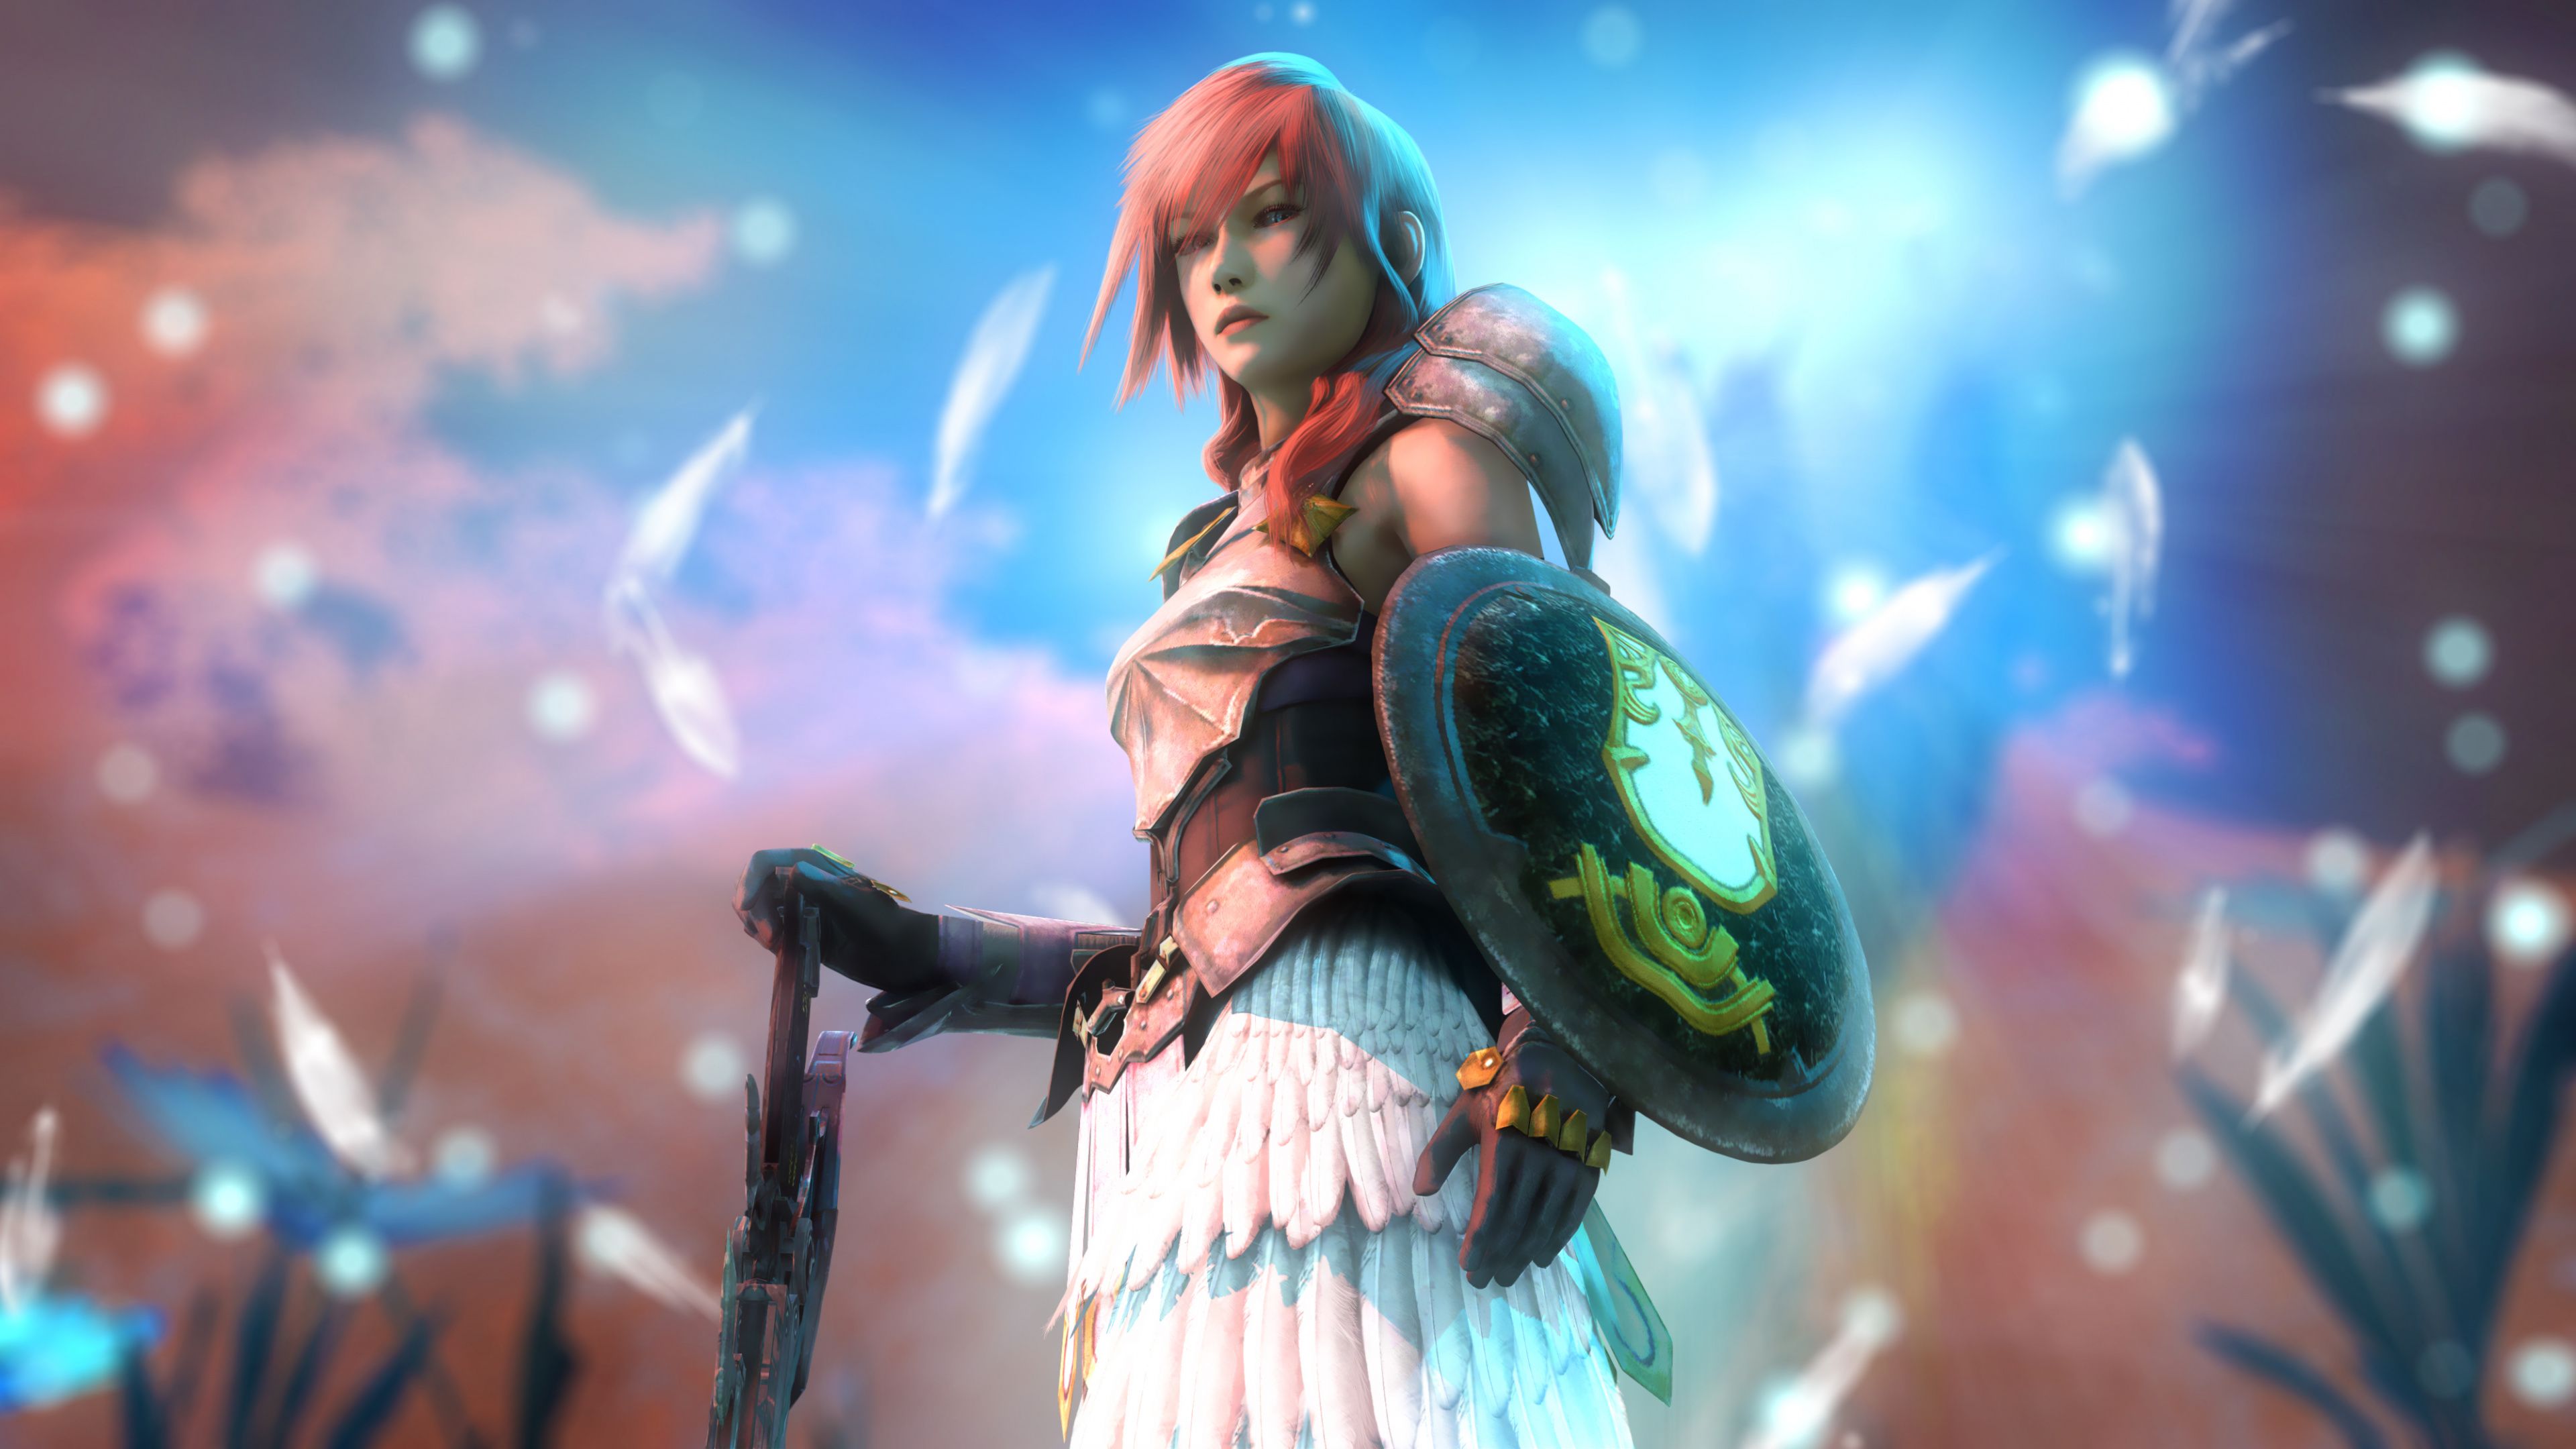 Download Lightning, Final Fantasy, woman warrior, art wallpaper, 3840x 4K UHD 16: Widescreen